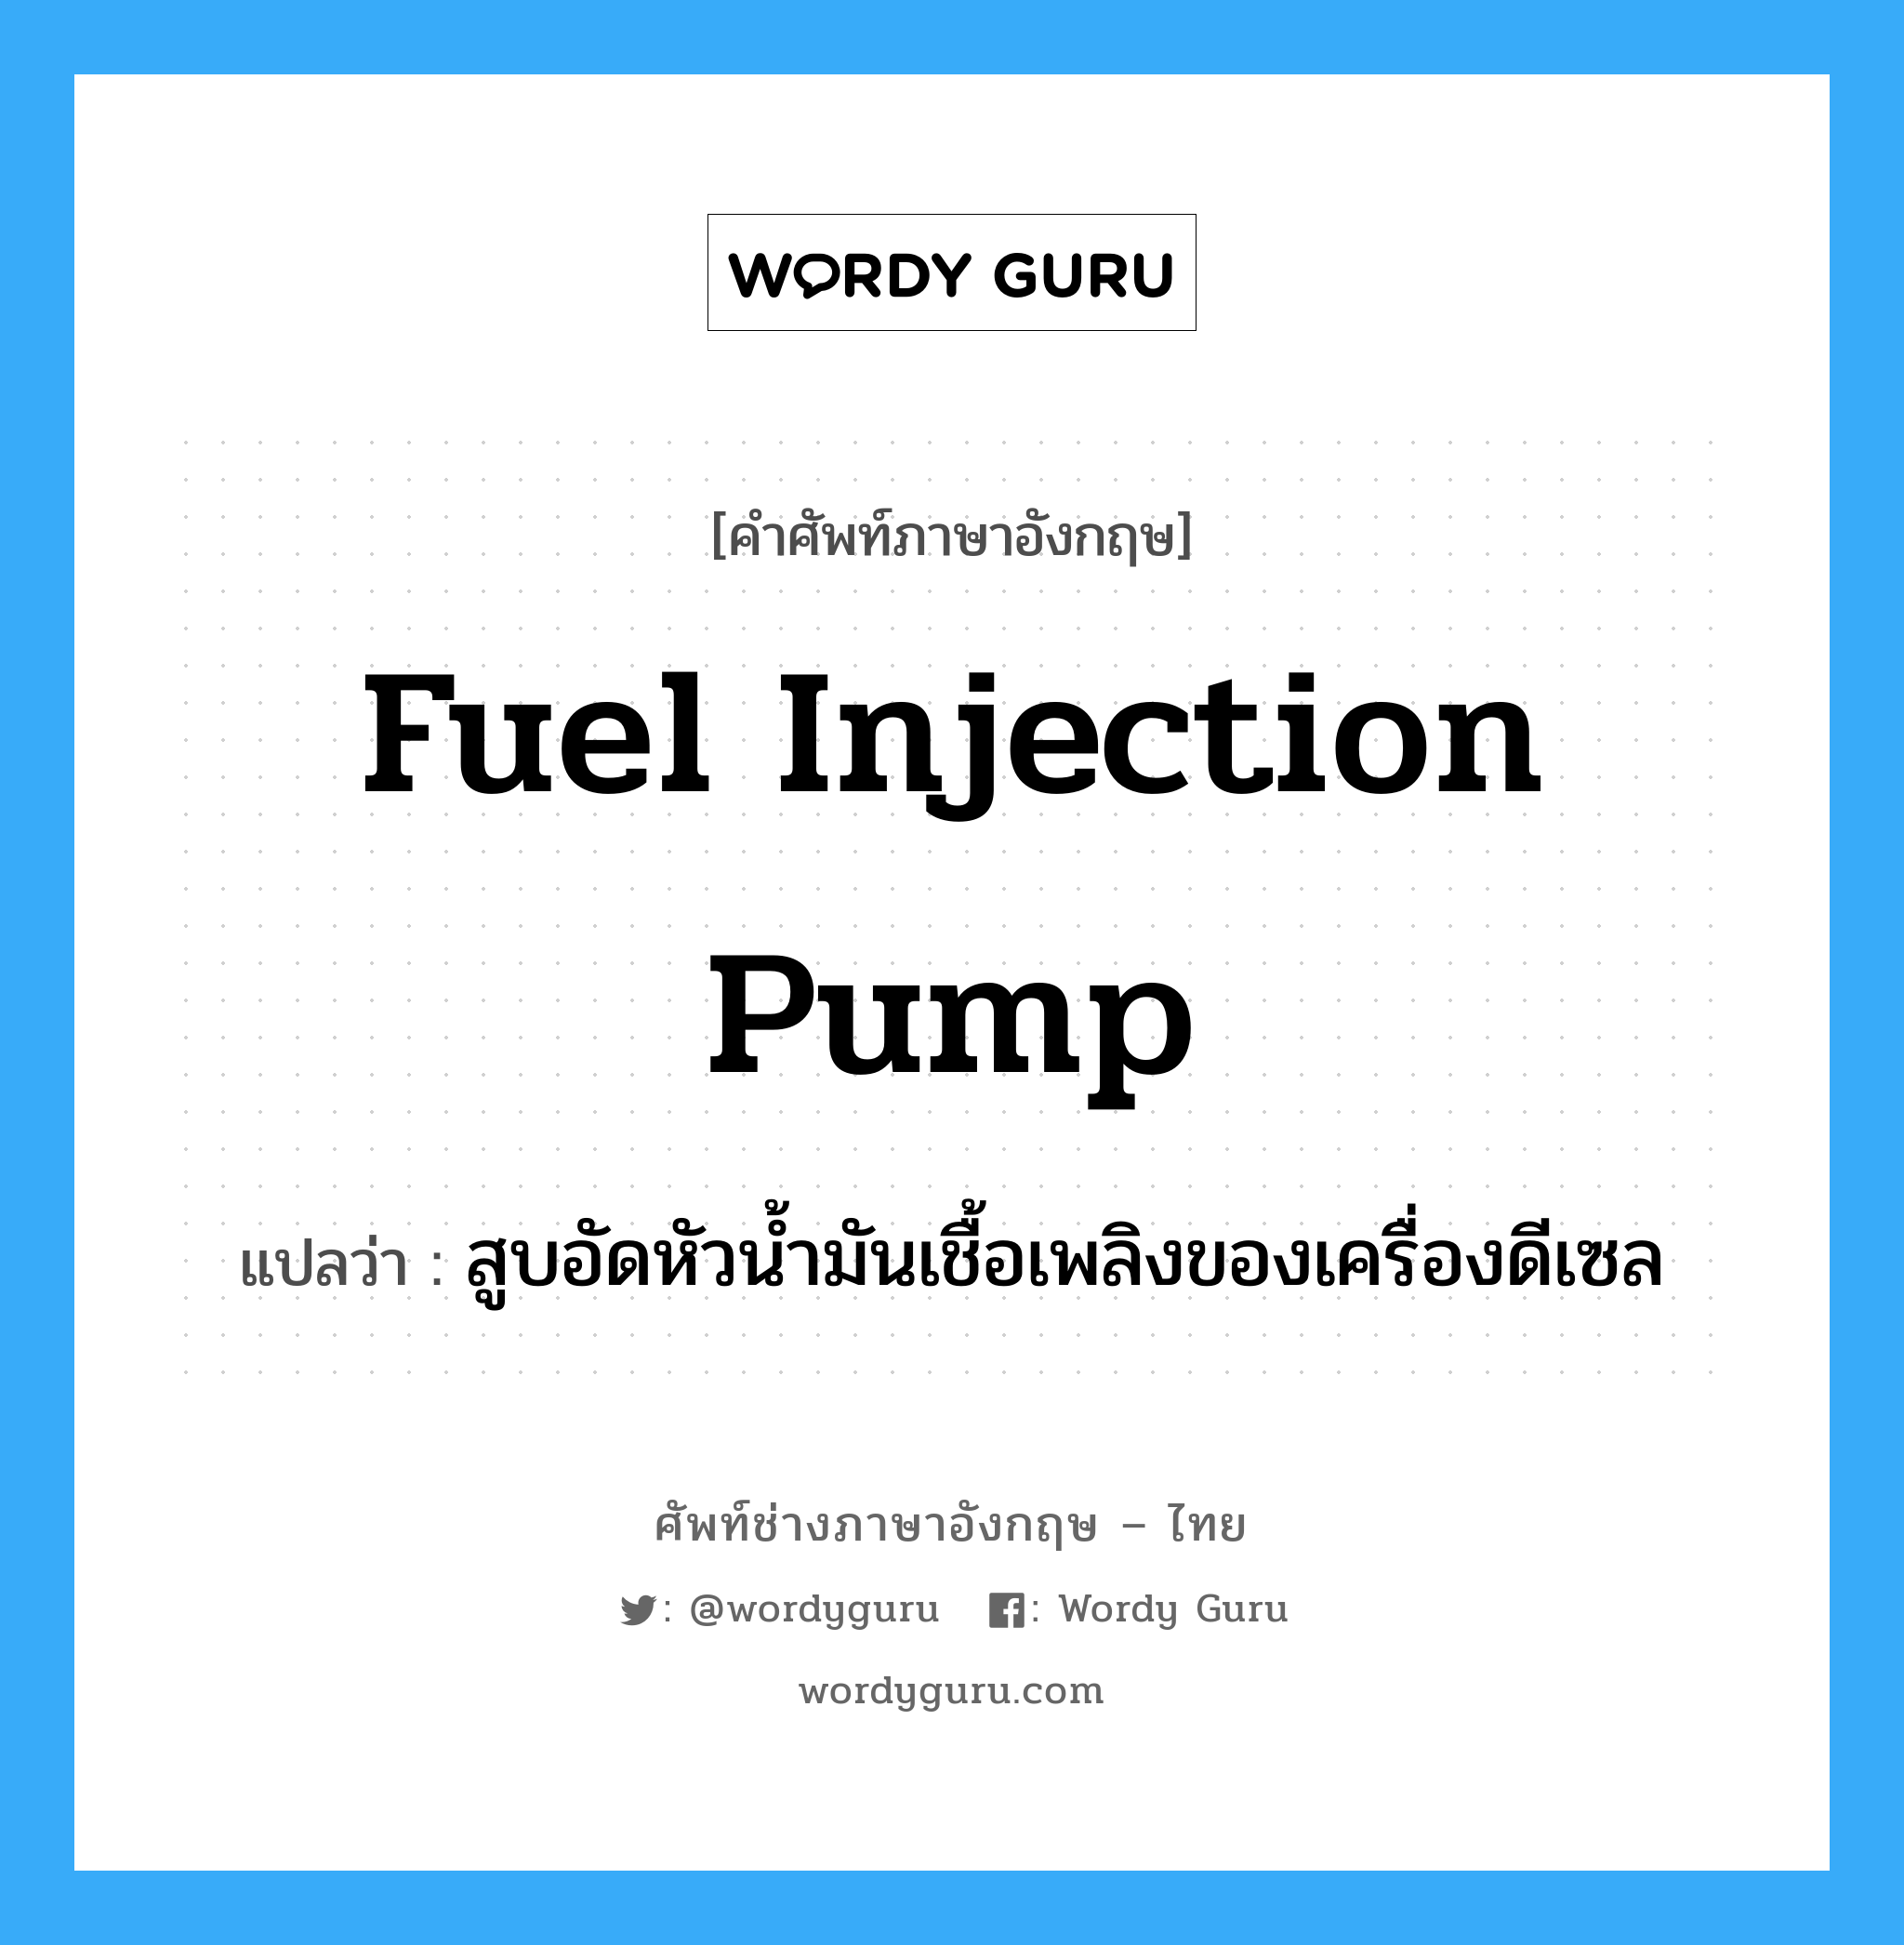 fuel injection pump แปลว่า?, คำศัพท์ช่างภาษาอังกฤษ - ไทย fuel injection pump คำศัพท์ภาษาอังกฤษ fuel injection pump แปลว่า สูบอัดหัวน้ำมันเชื้อเพลิงของเครื่องดีเซล